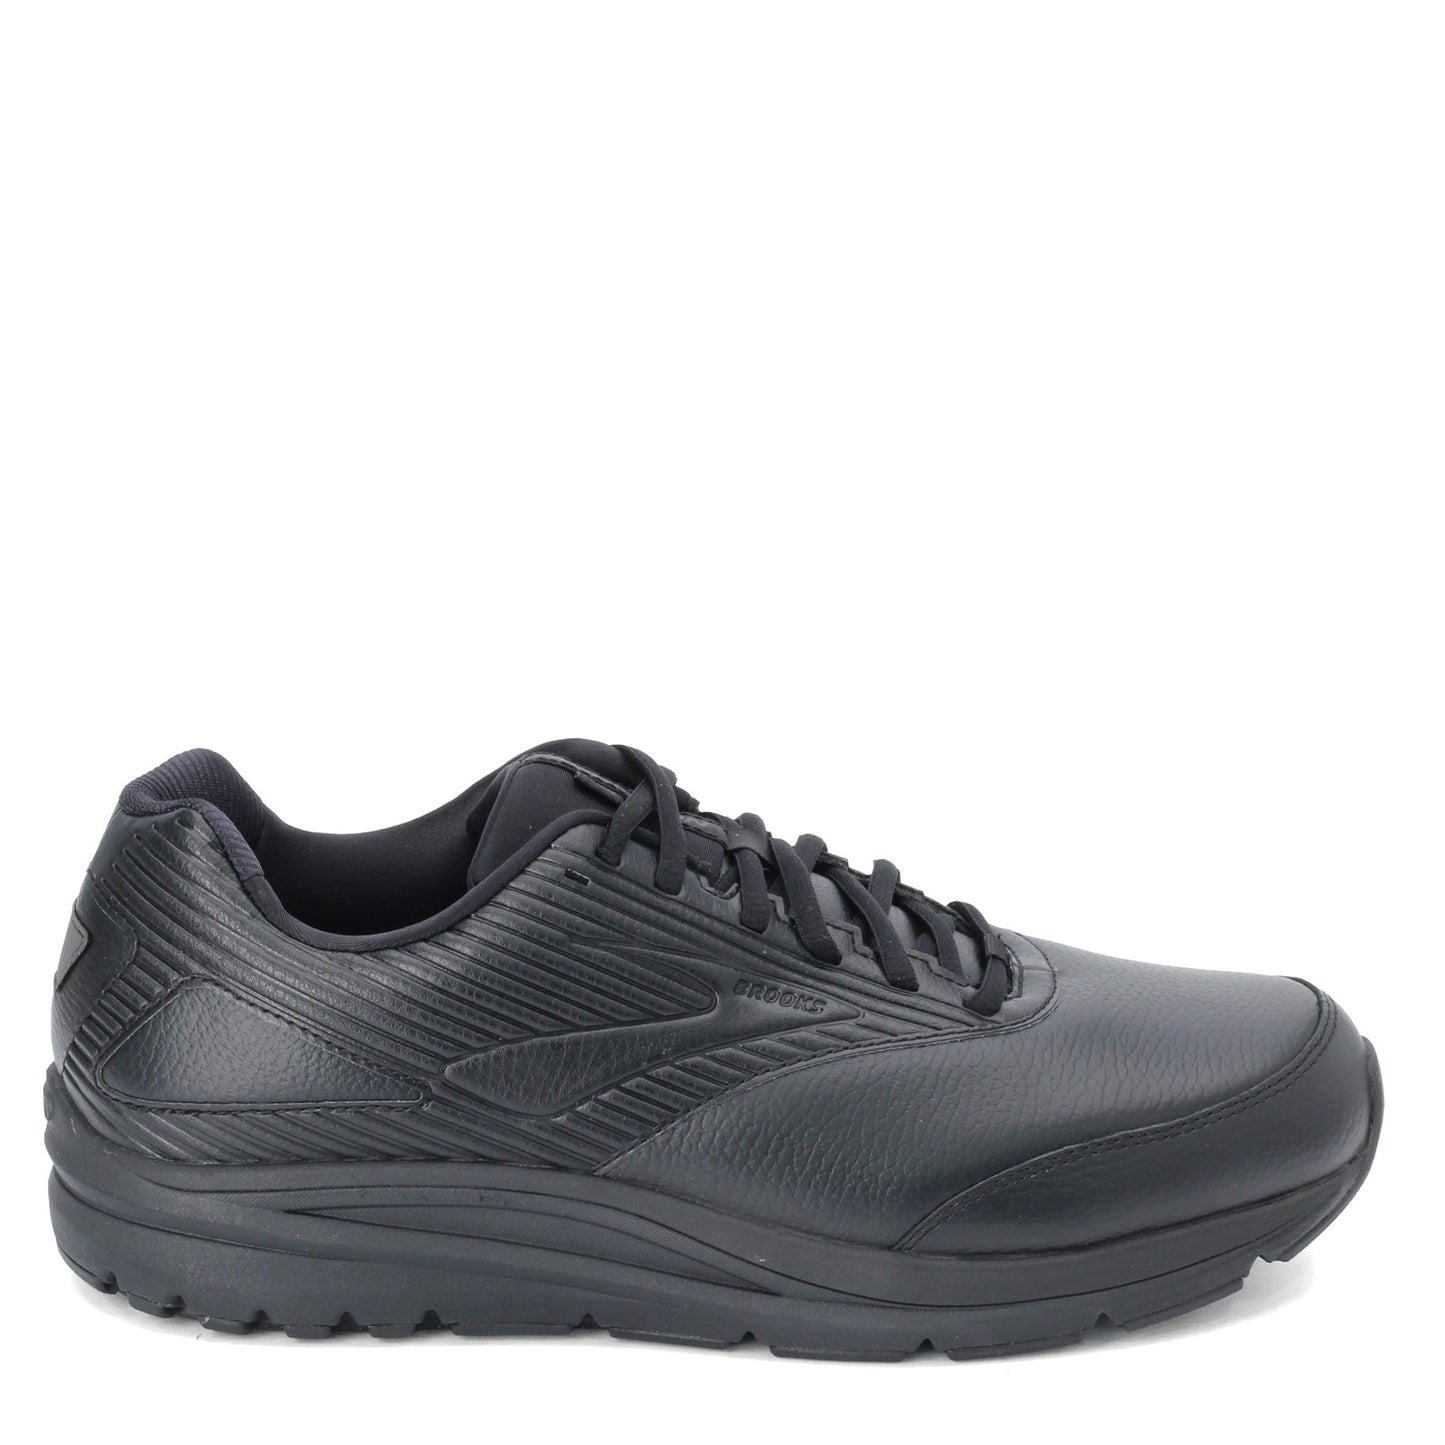 Peltz Shoes  Men's Brooks Addiction Walker 2 Walking Shoe - Wide Width Black/Black 110318 2E 072